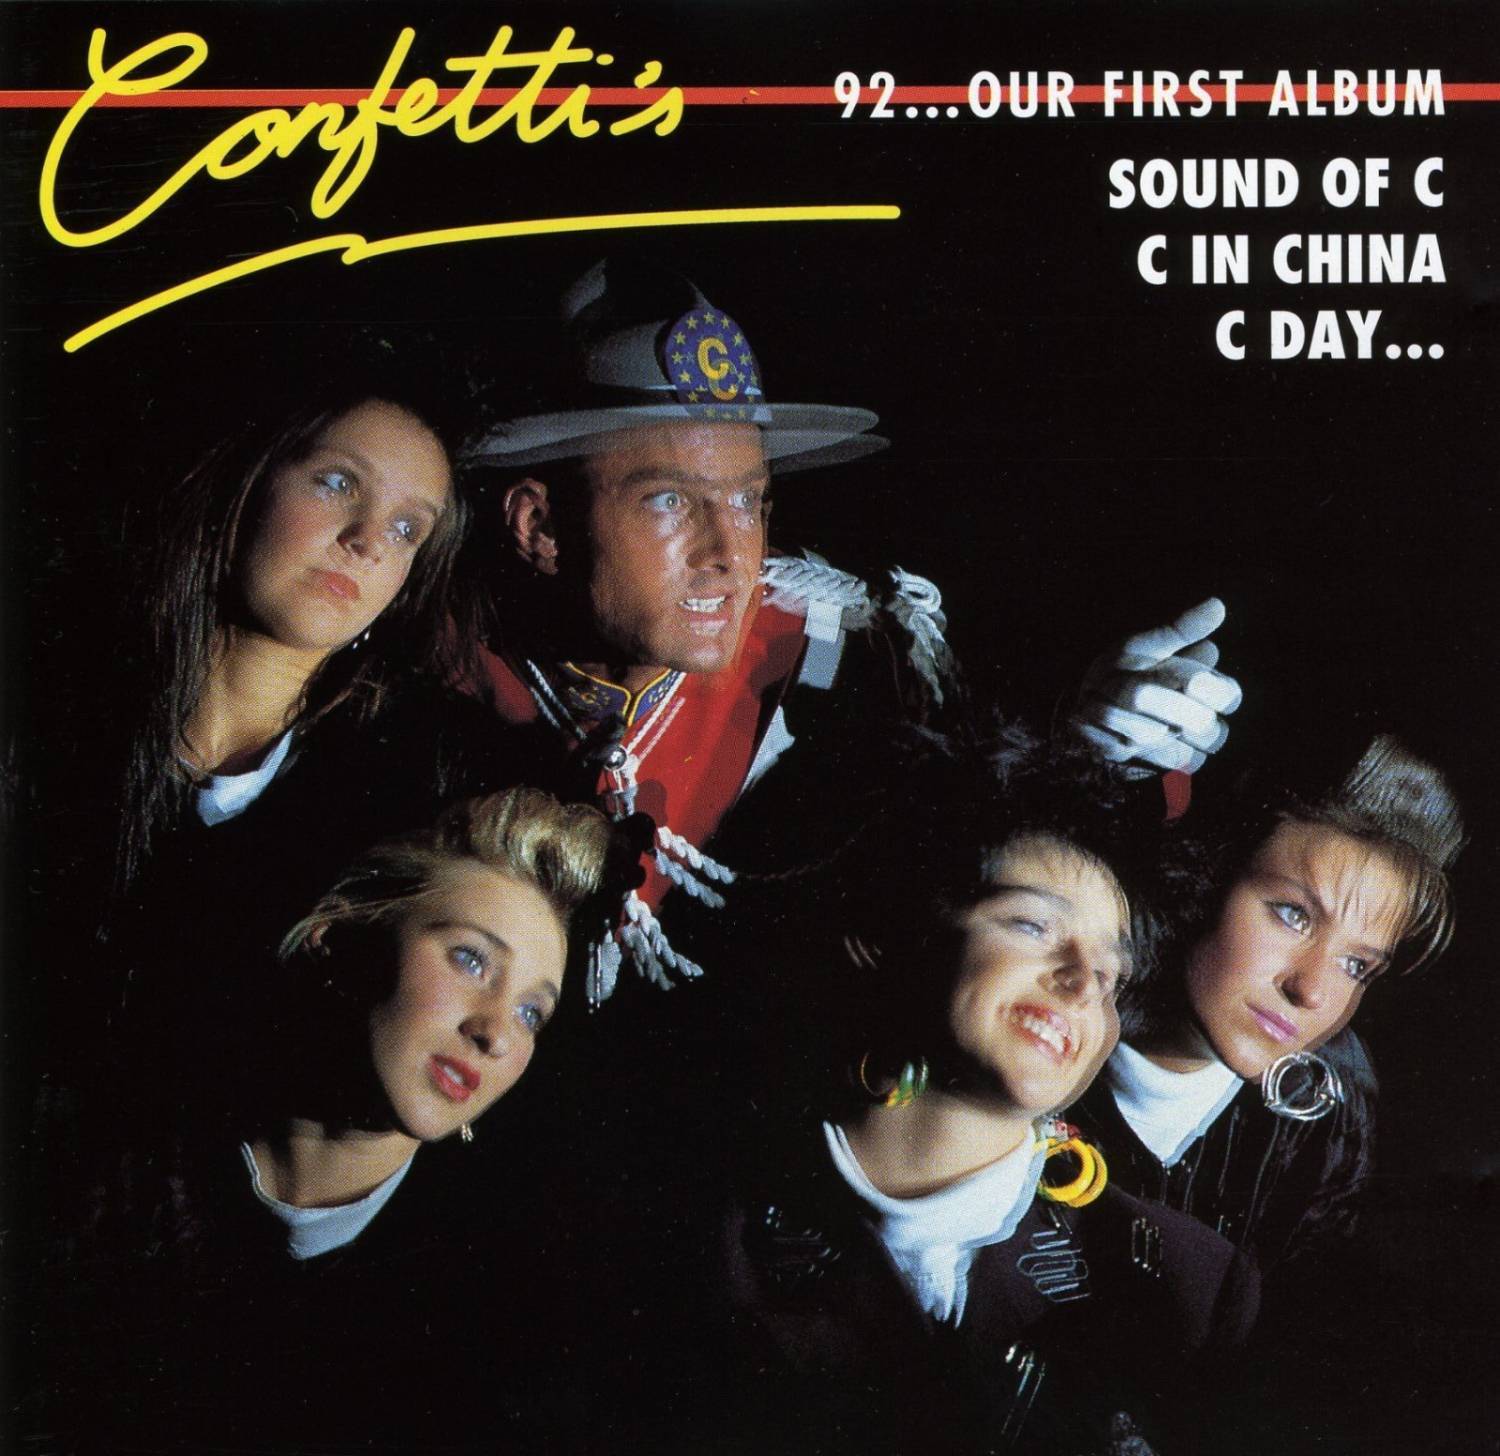 Конфетти слушать. Confettis группа. Confetti's 92...our first album. Группа конфетти 1988. Группа Confetti's участники.